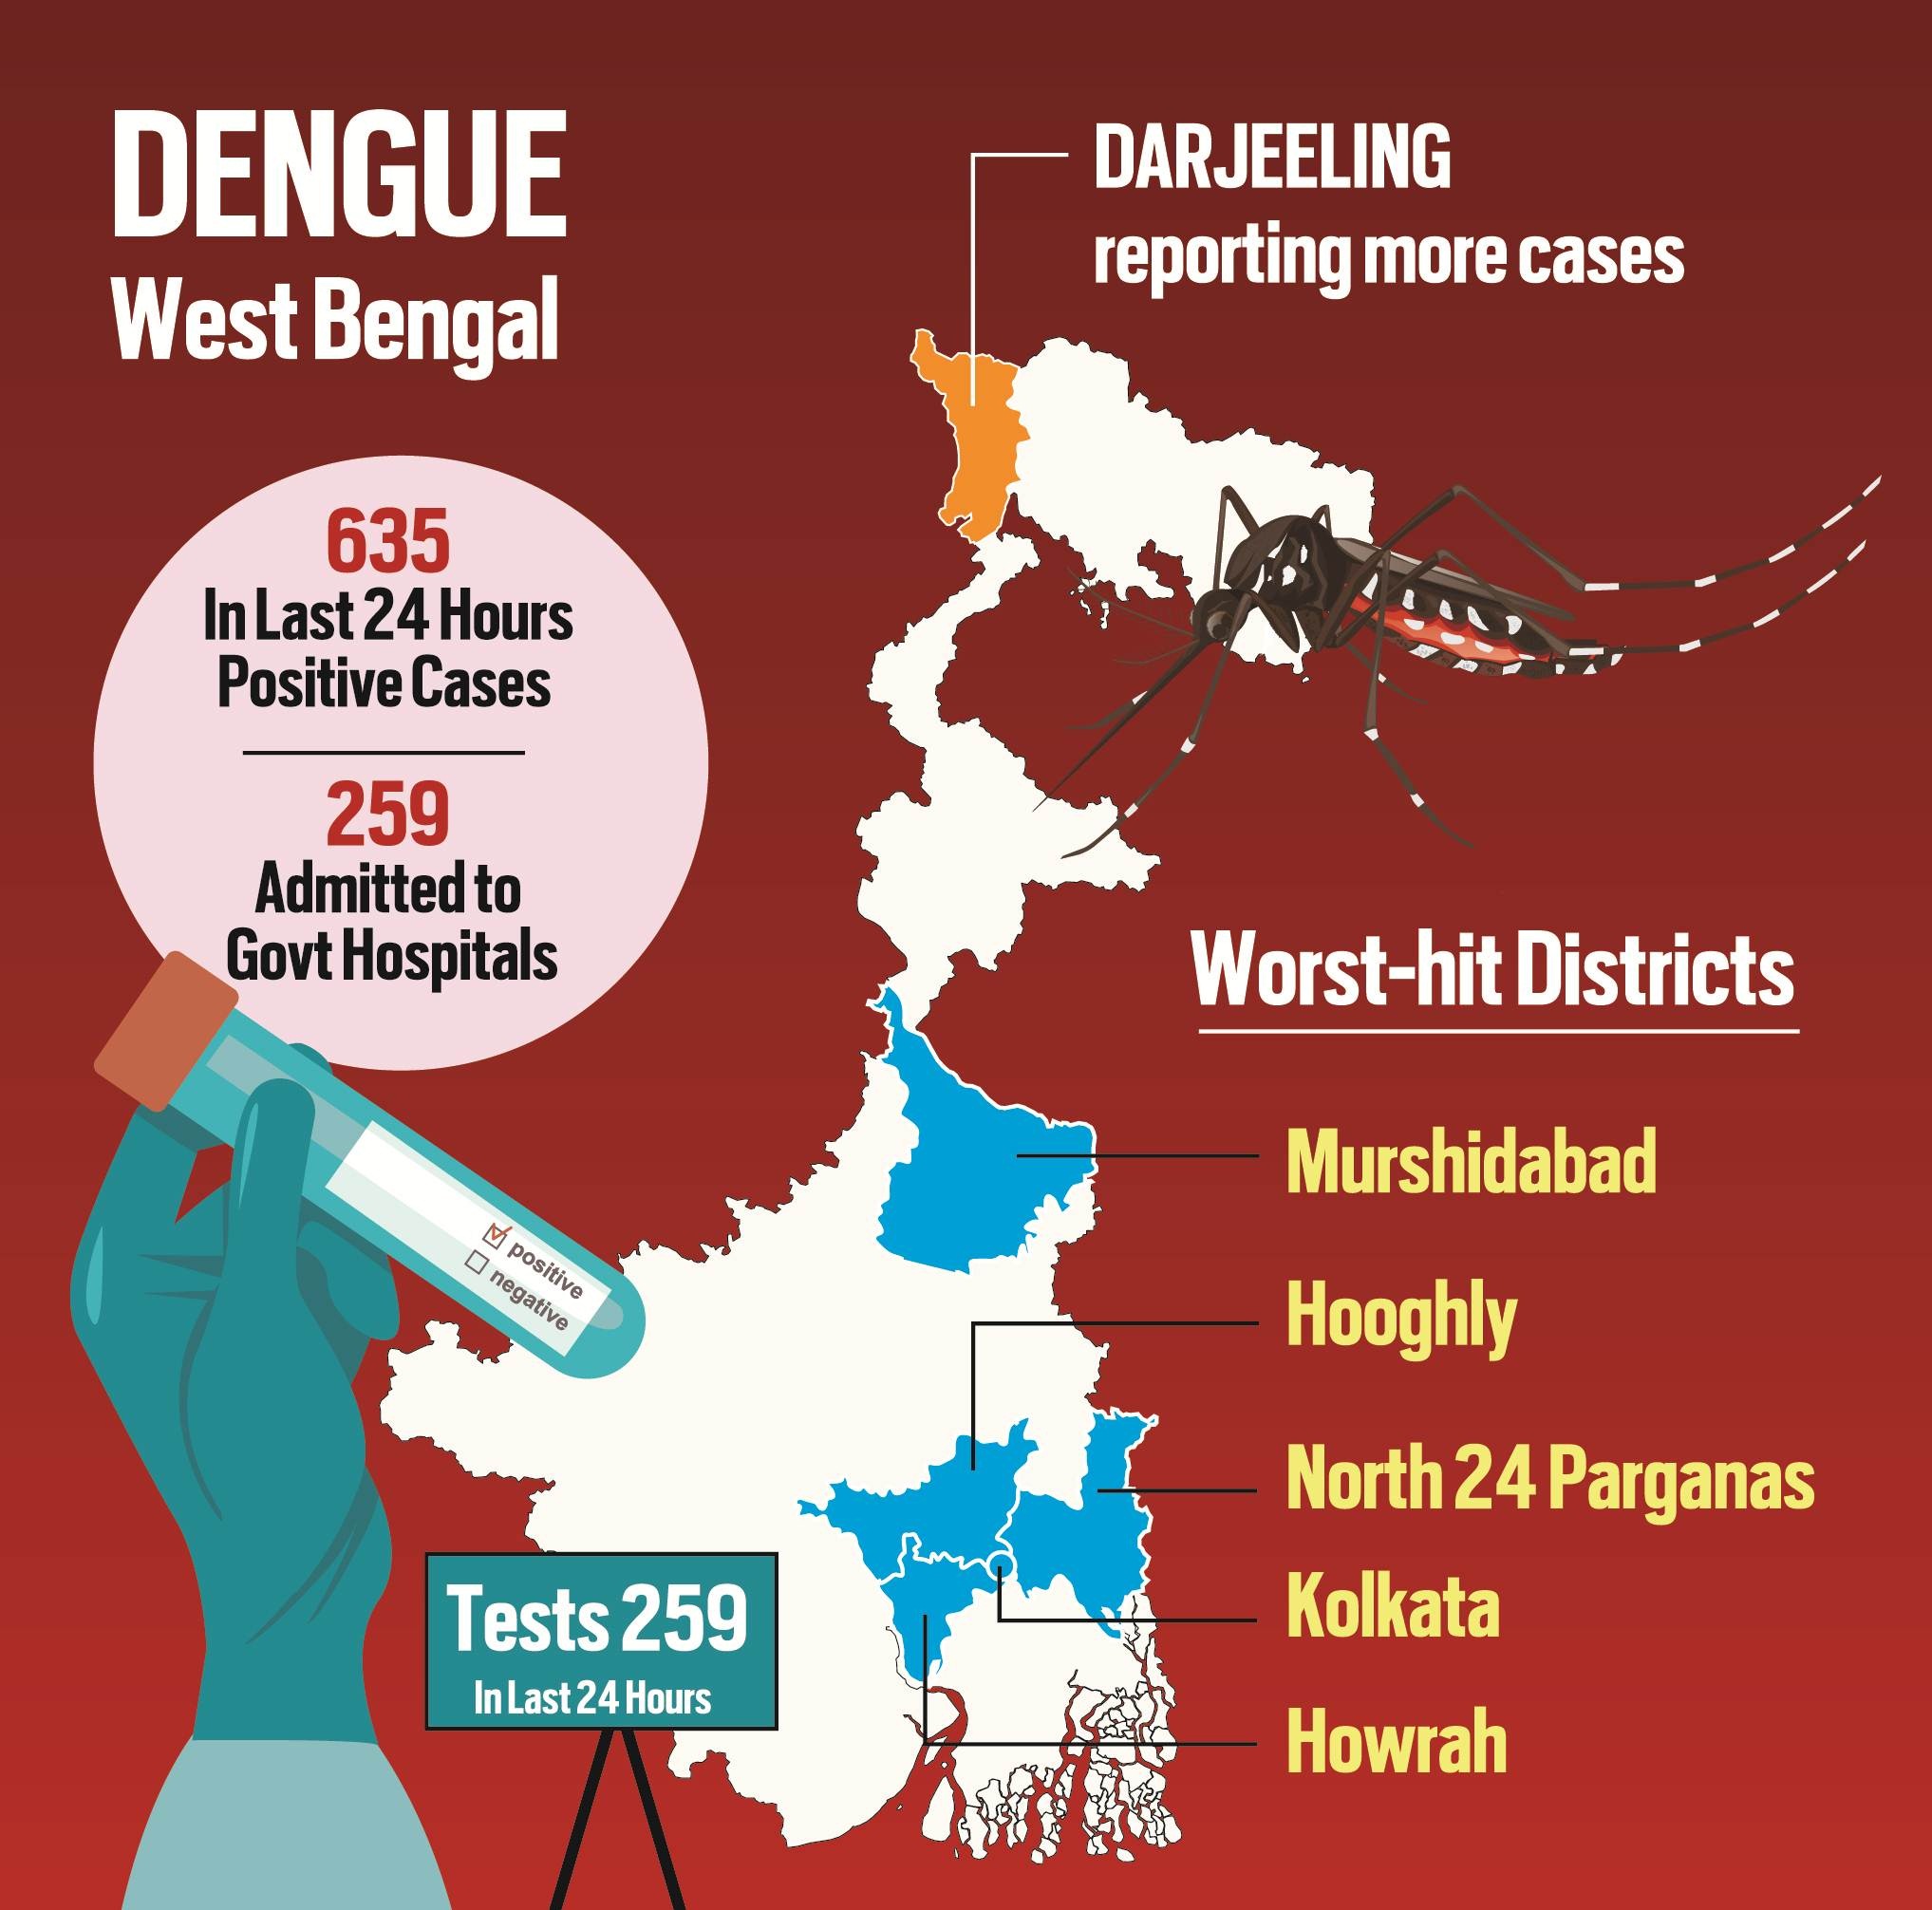 case study dengue fever case presentation